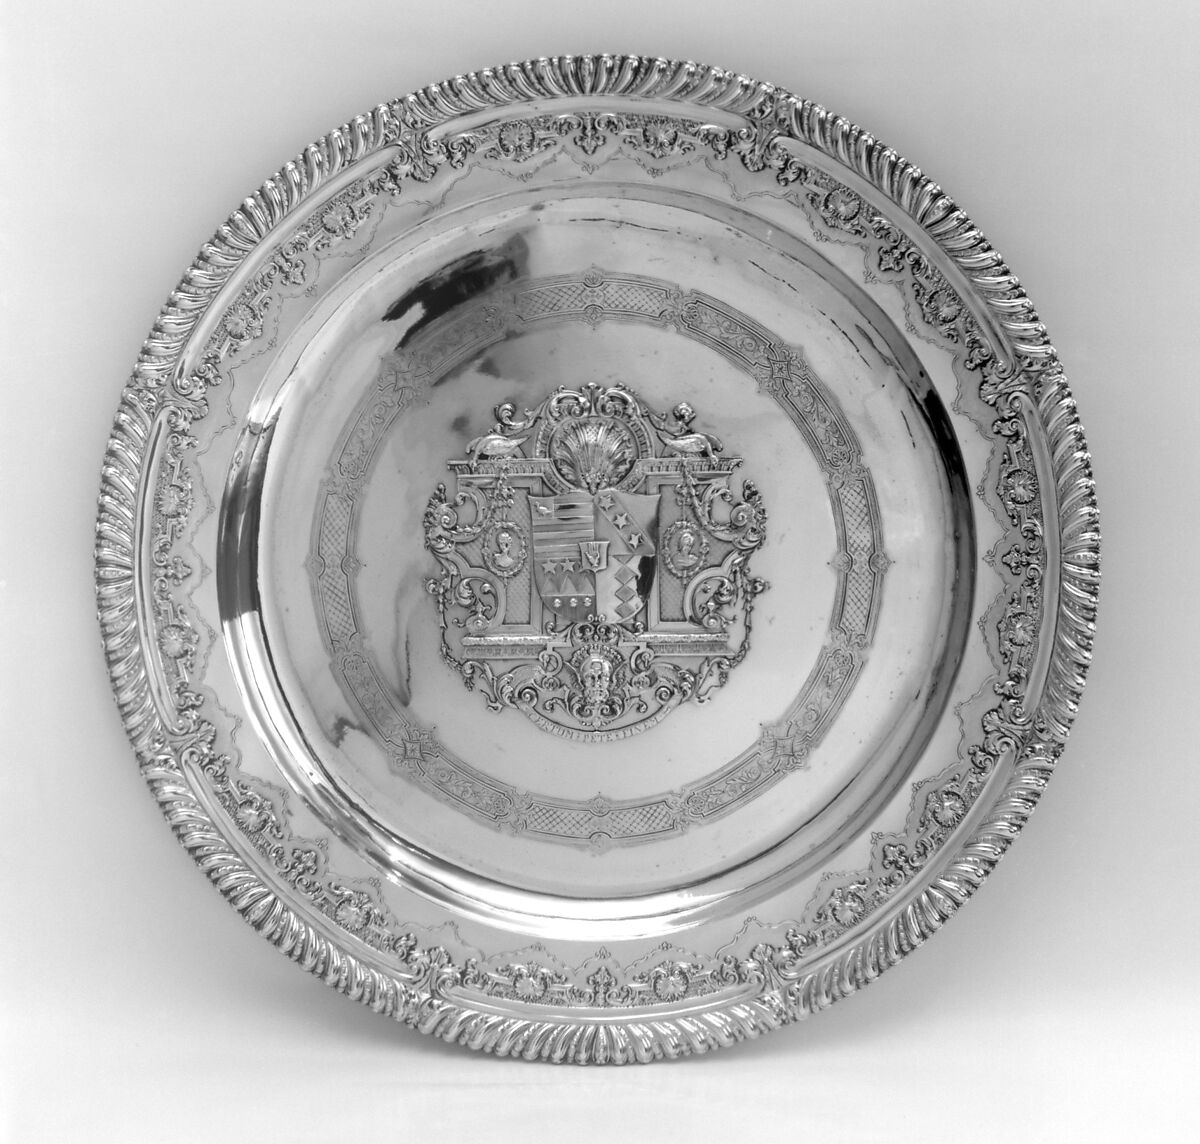 Charger, Paul de Lamerie (British, 1688–1751, active 1712–51), Silver gilt, British, London 